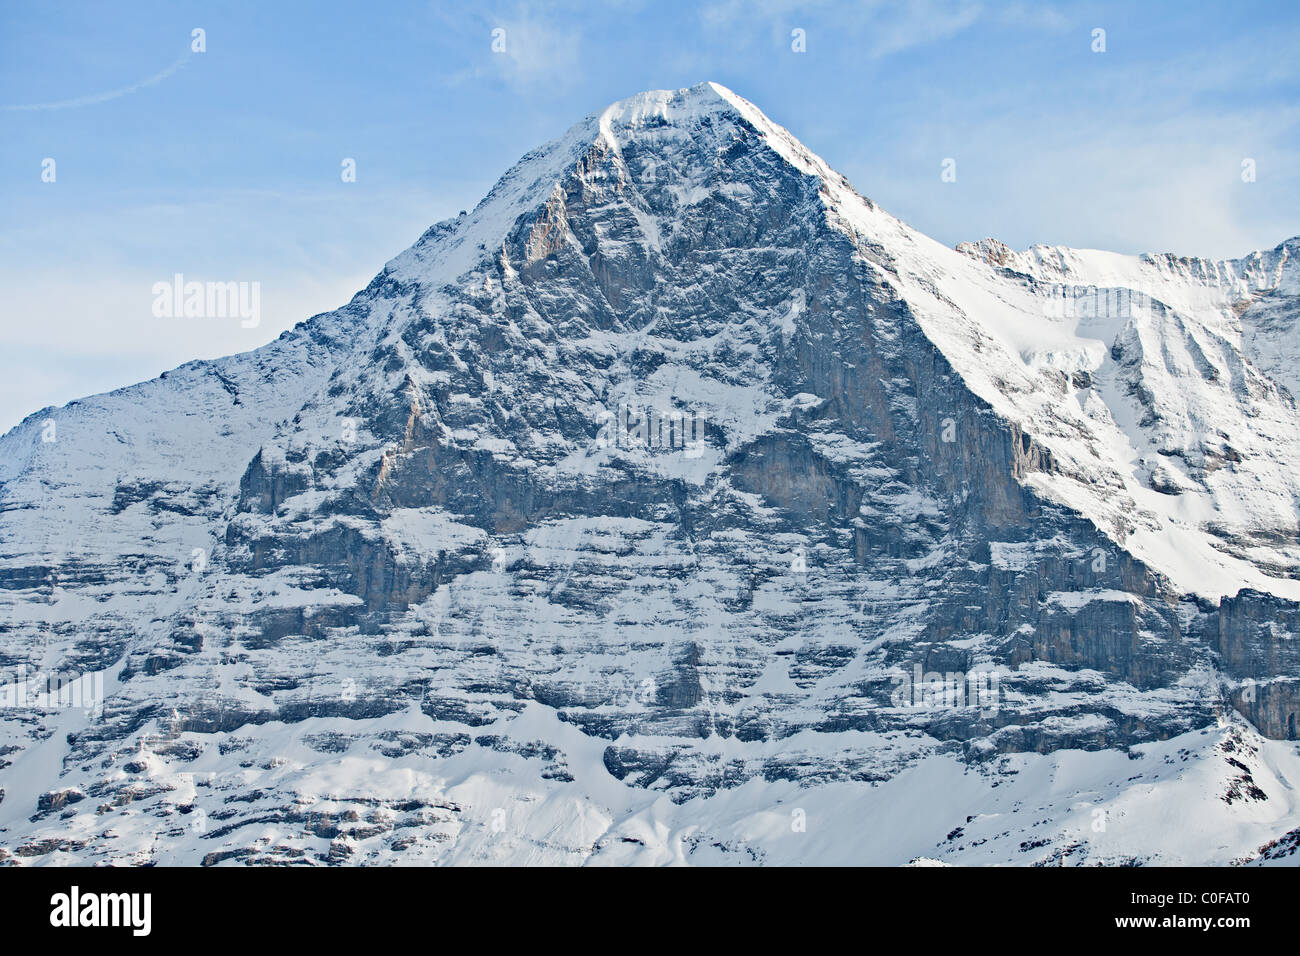 La parete nord dell'Eiger, Oberland bernese, alpi svizzere, Svizzera Foto Stock